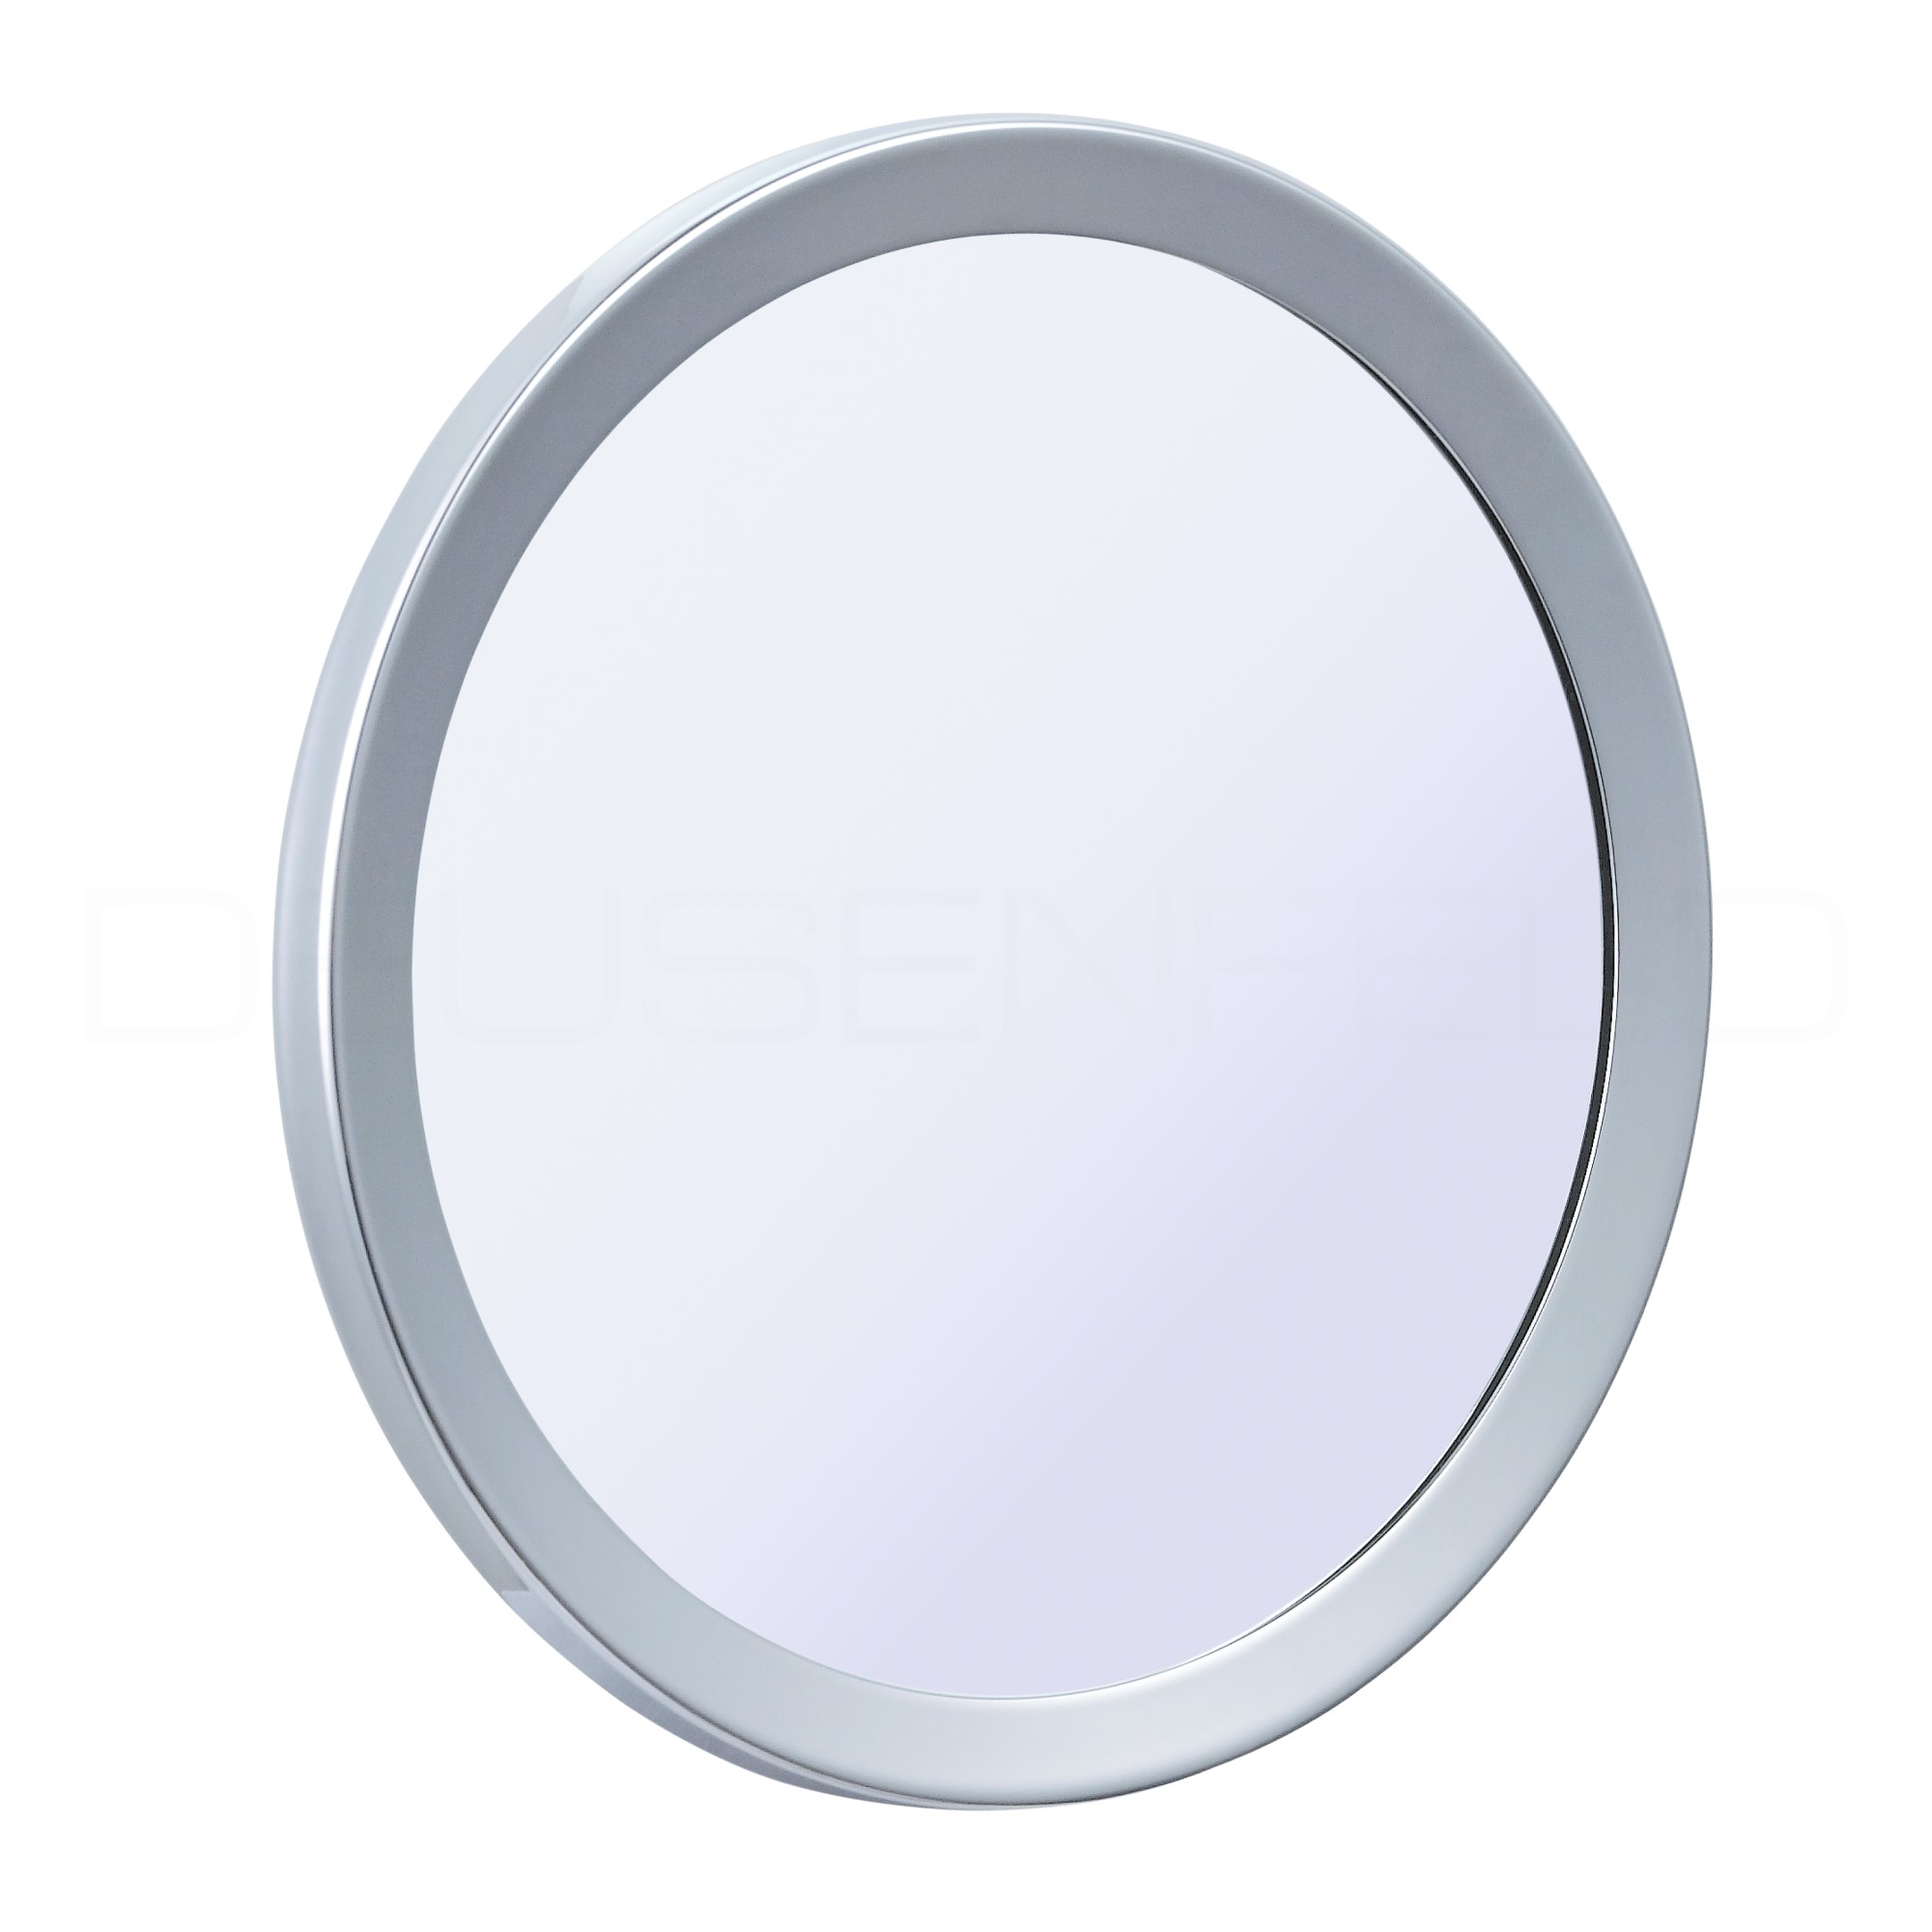 Kosmetikspiegel online kaufen  MAEDJE KG - DEUSENFELD KM7C-O - Magnet  Kosmetikspiegel mit selbstklebender Wandplatte, Klebespiegel, magnetisch  abnehmbar, Ø15cm, 7x Vergrößerung, hochglanz verchromt